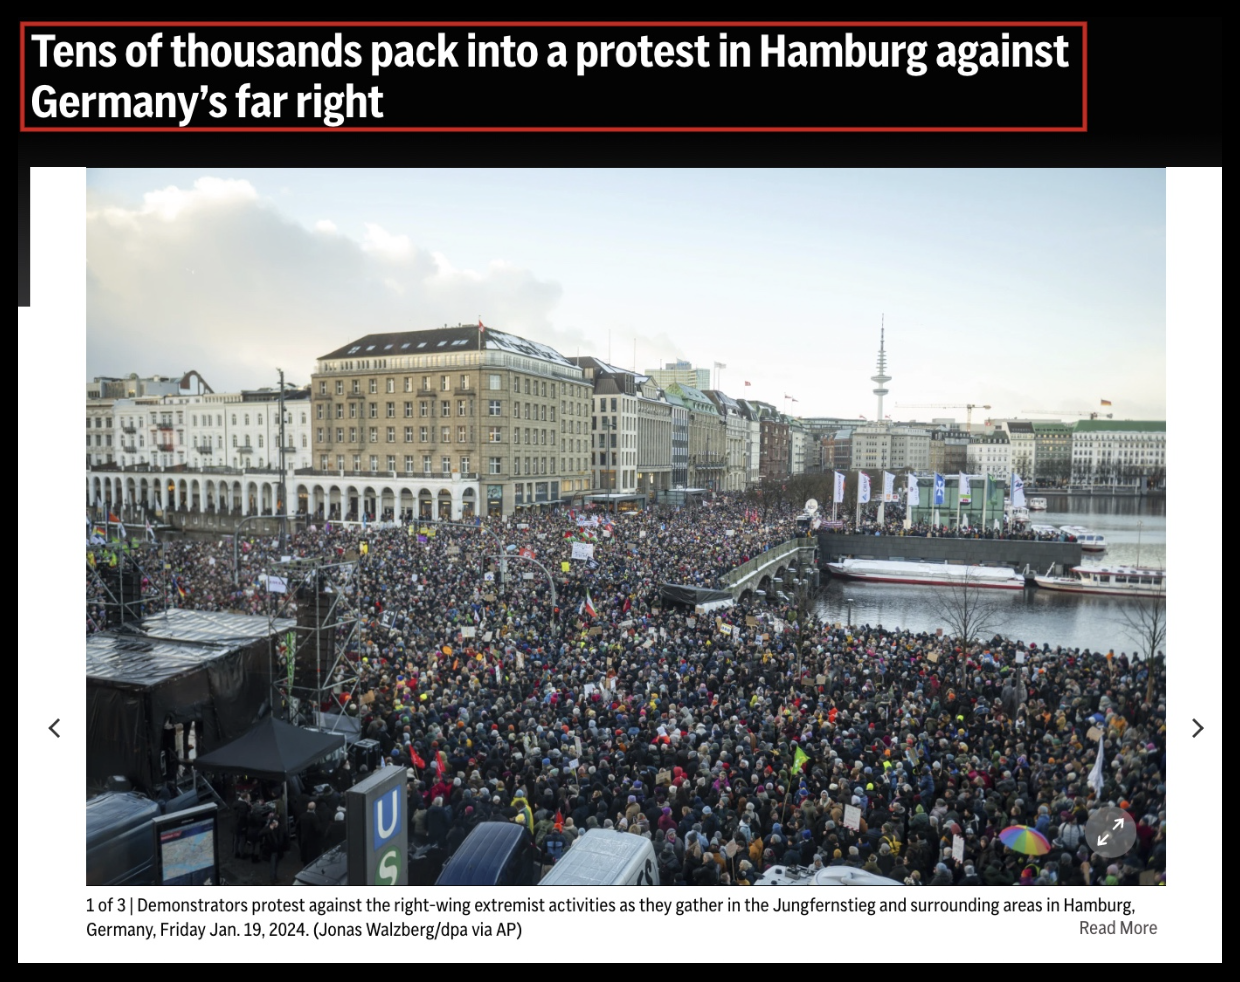 Dies ist ein Screenshot des Titelbilds eines Associated Press-Artikels, der Demonstrationen zum Protest gegen die deutsche Rechtsextreme zeigt.